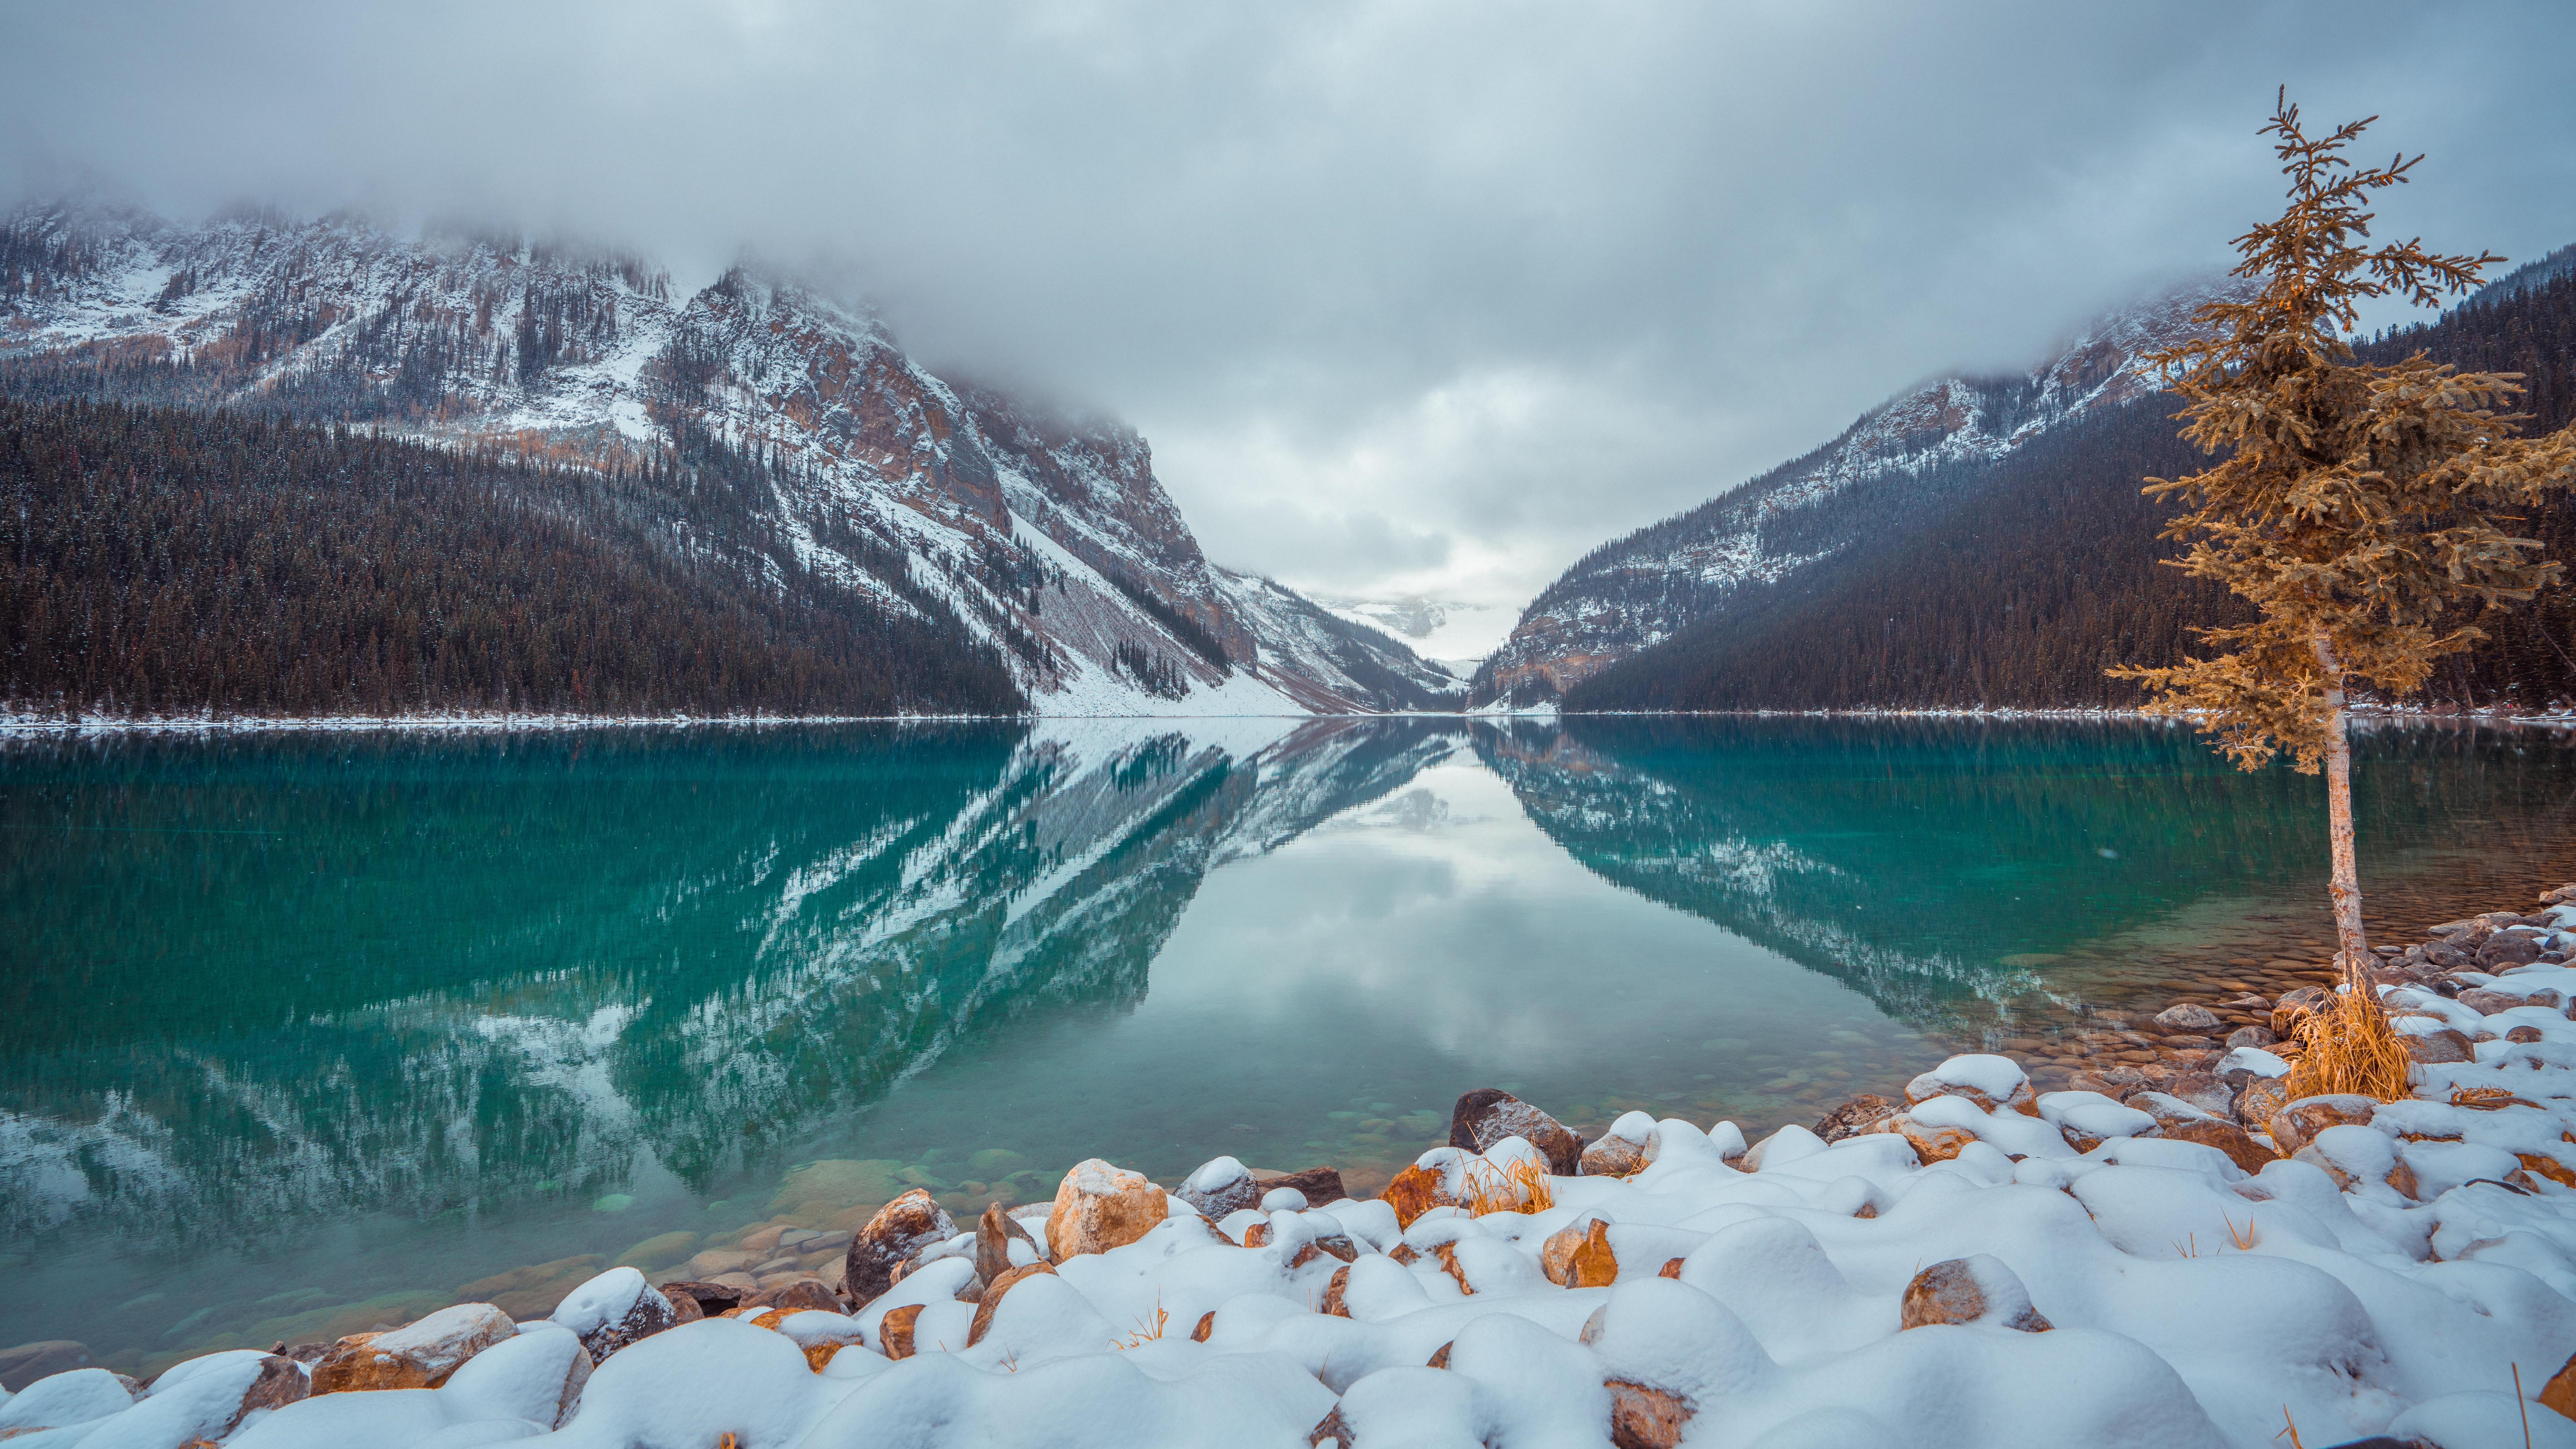 Lake Louise in Winter 8k Ultra HD Wallpaper. Background